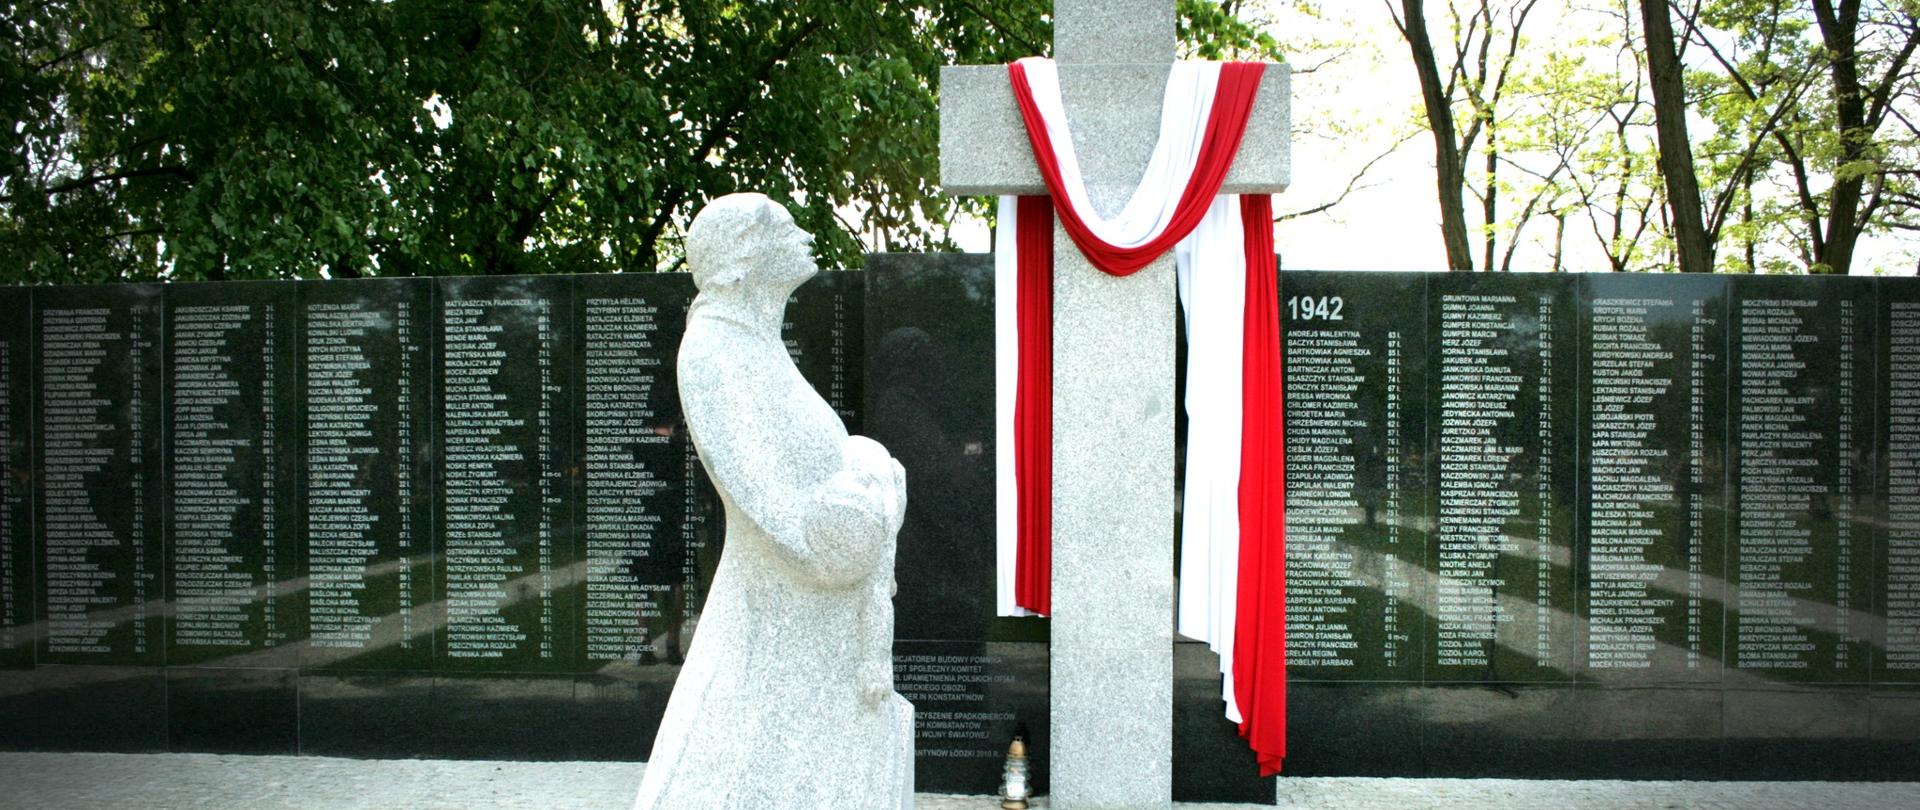 Pomnik Matki Boskiej trzymającej dziecko na rękach, krzyż kamienny owinięty podłużną flagą Polski oraz tablica z nazwiskami ofiar wojny.